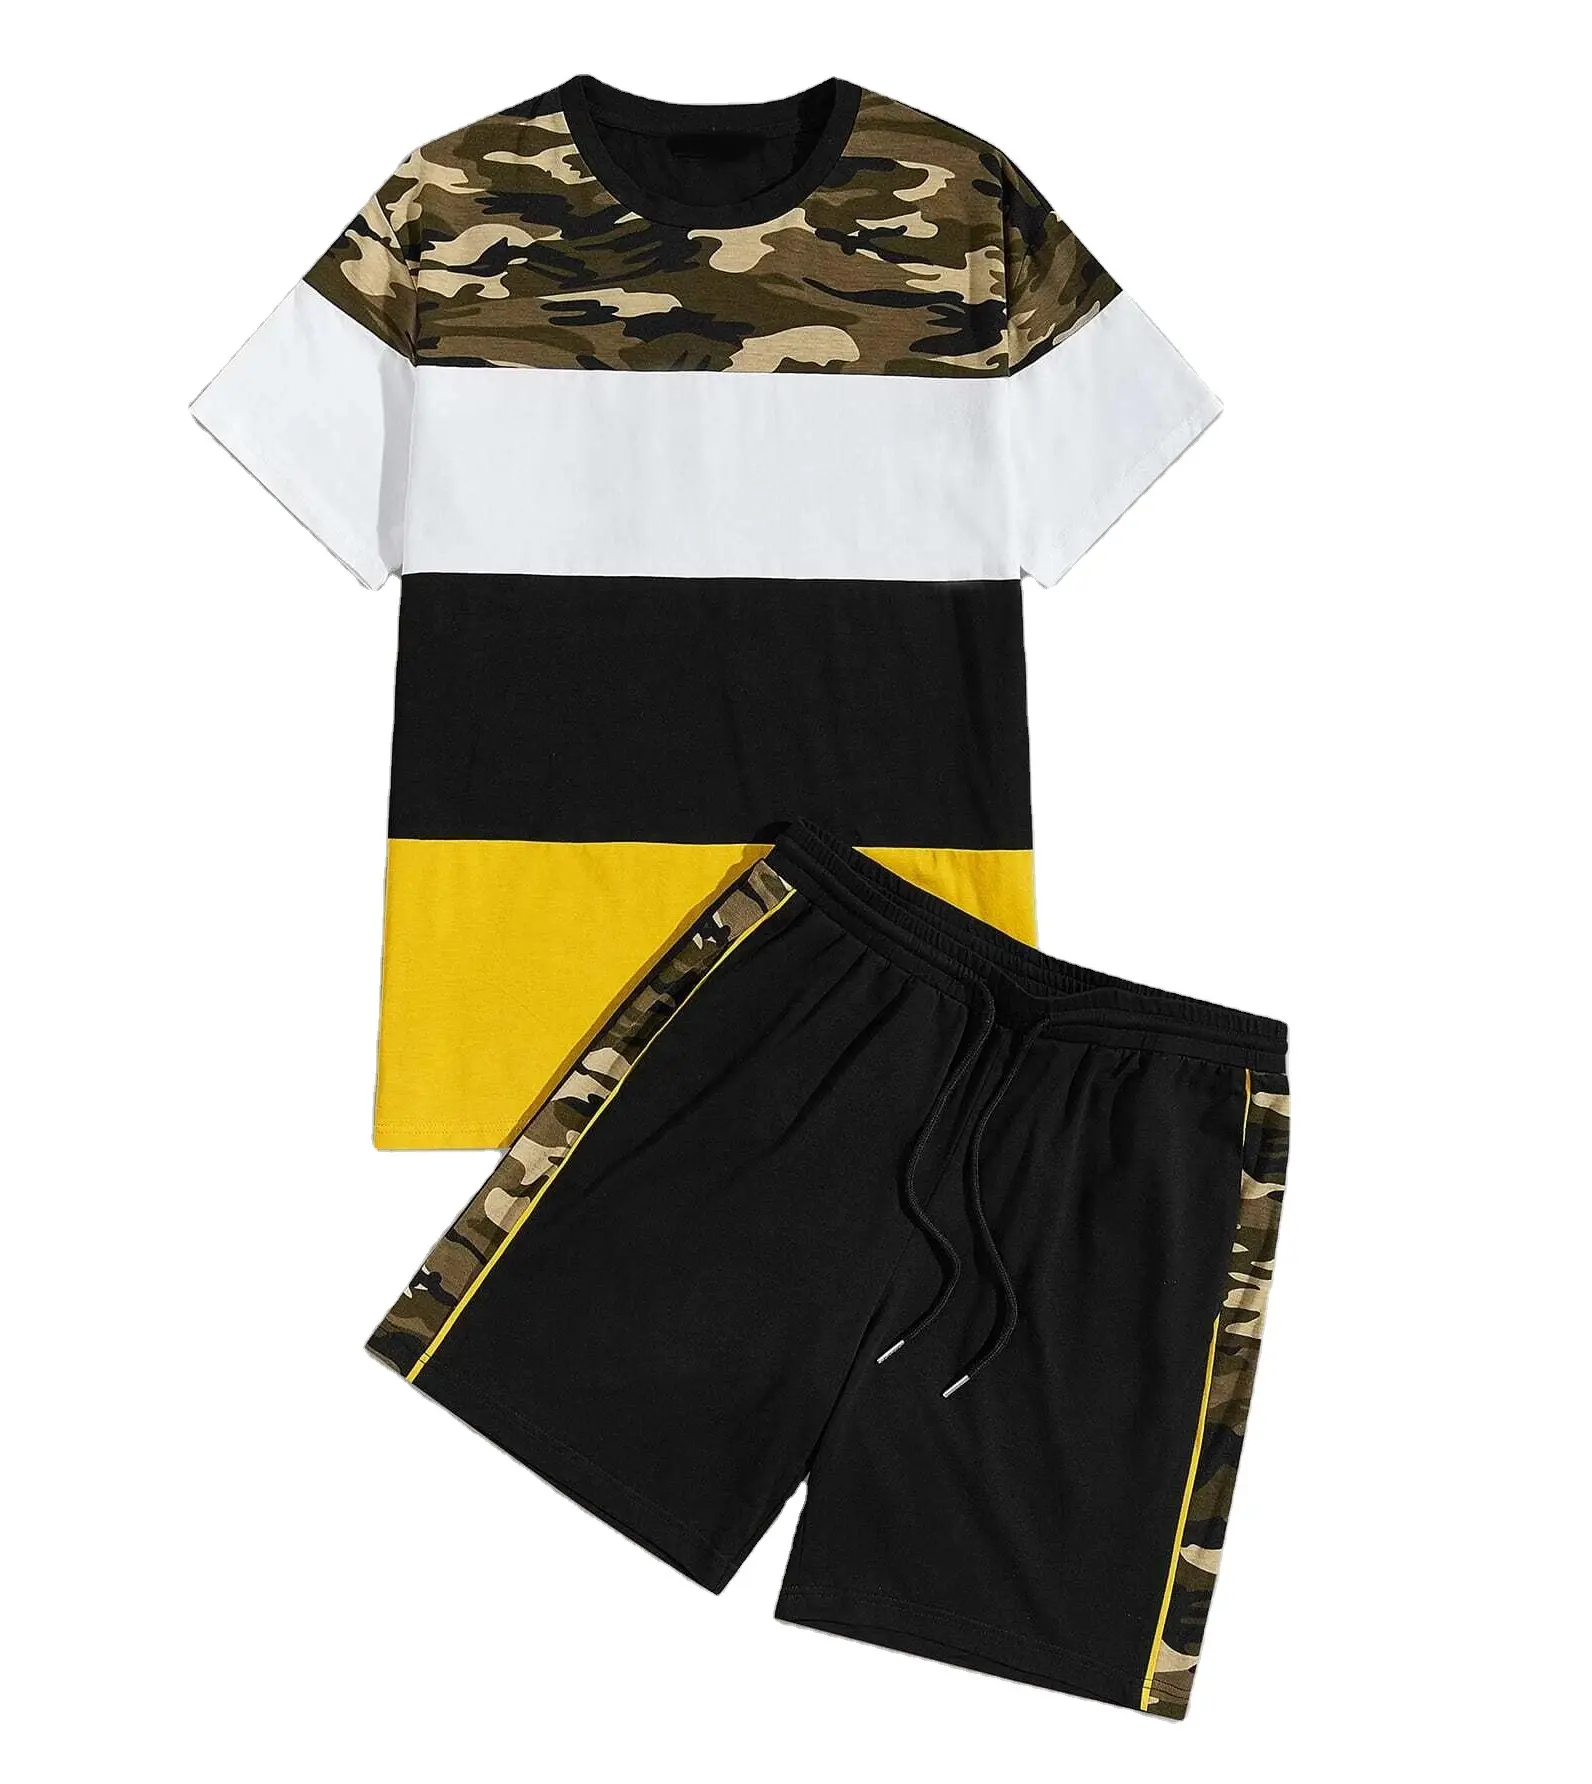 पुरुषों के कपड़ों के लिए स्पोर्ट्स टी शर्ट फ़ॉन्ट डिज़ाइन जर्सी फुल सब्लिमेशन प्रिंटिंग कस्टम स्पोर्ट्स शॉर्ट